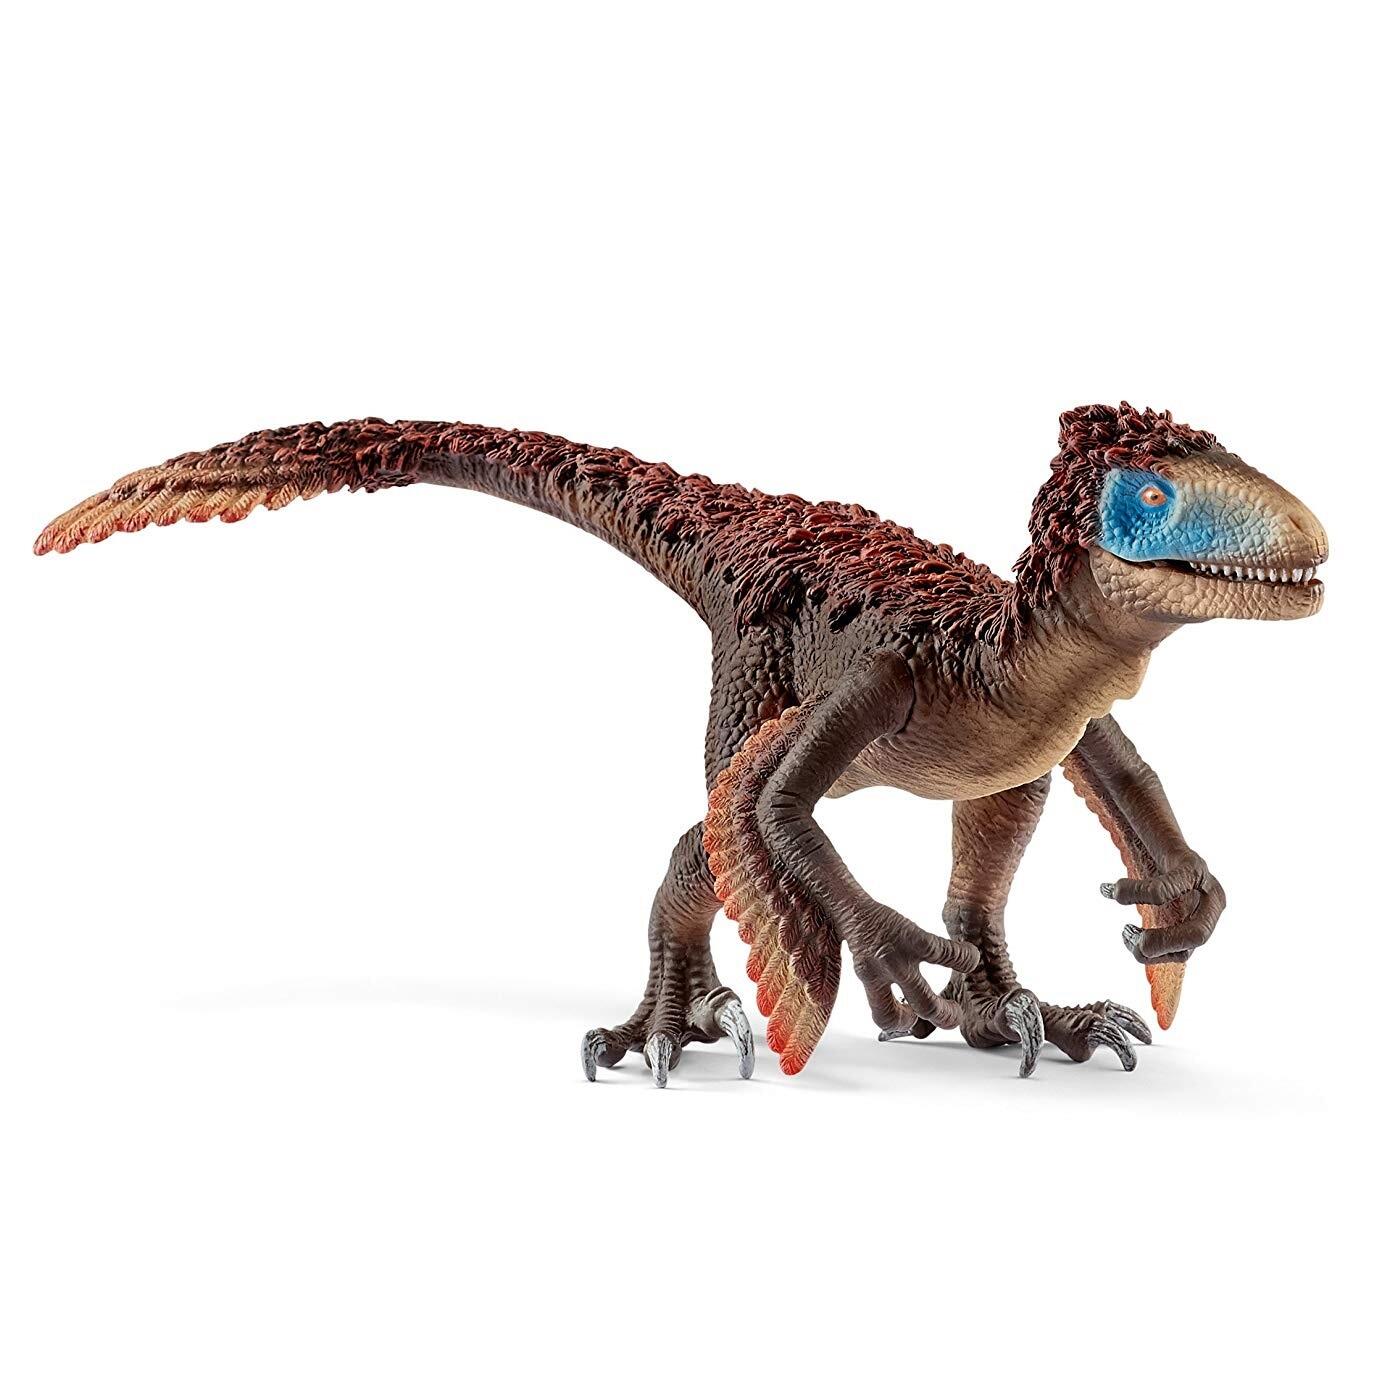 Schleich Dinosaurs Utahraptor Figure